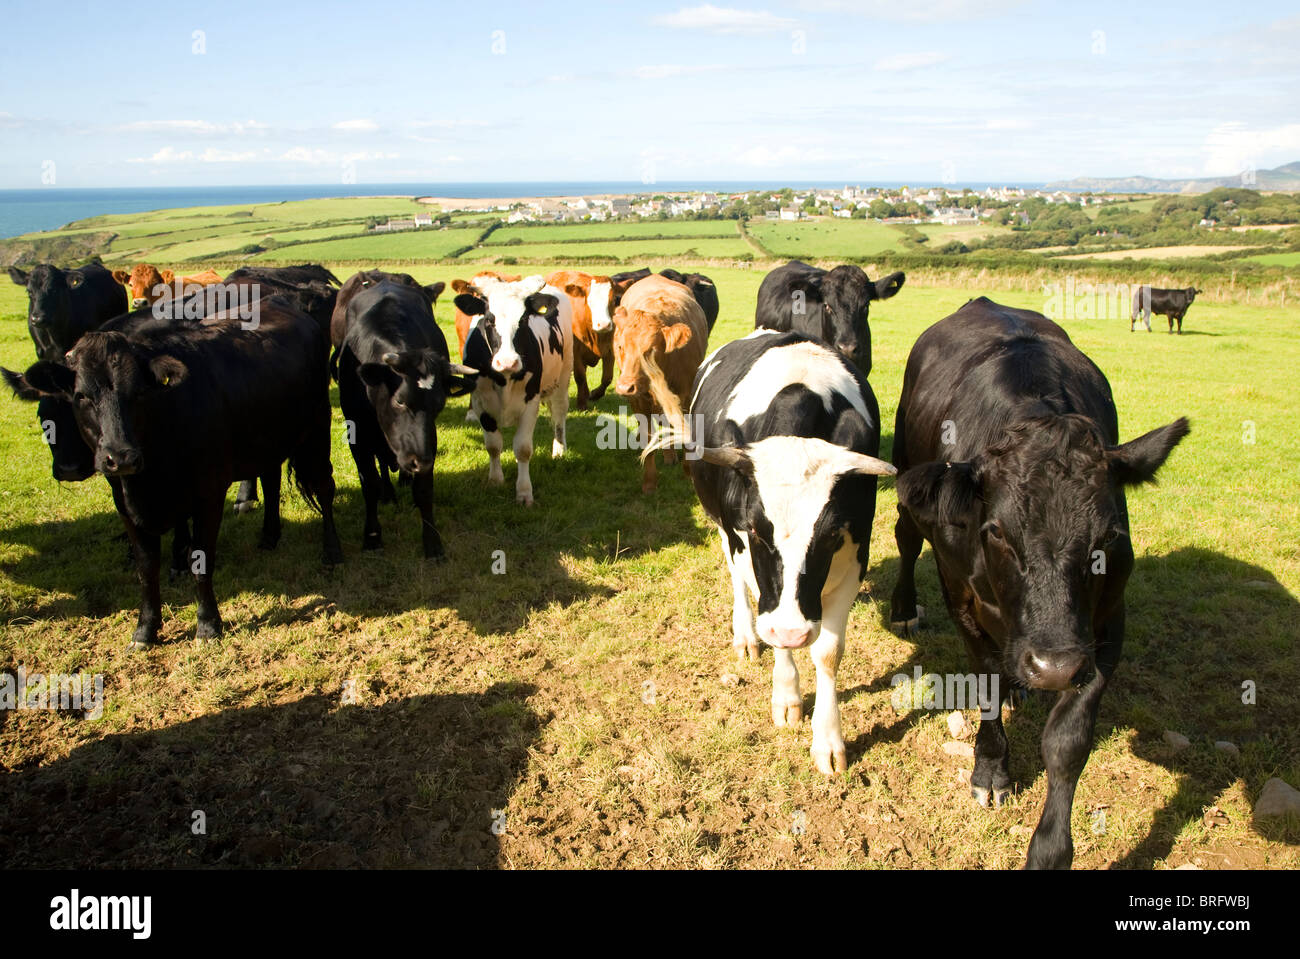 Cattle in field near village of Trefin, Pembrokeshire, Wales Stock Photo